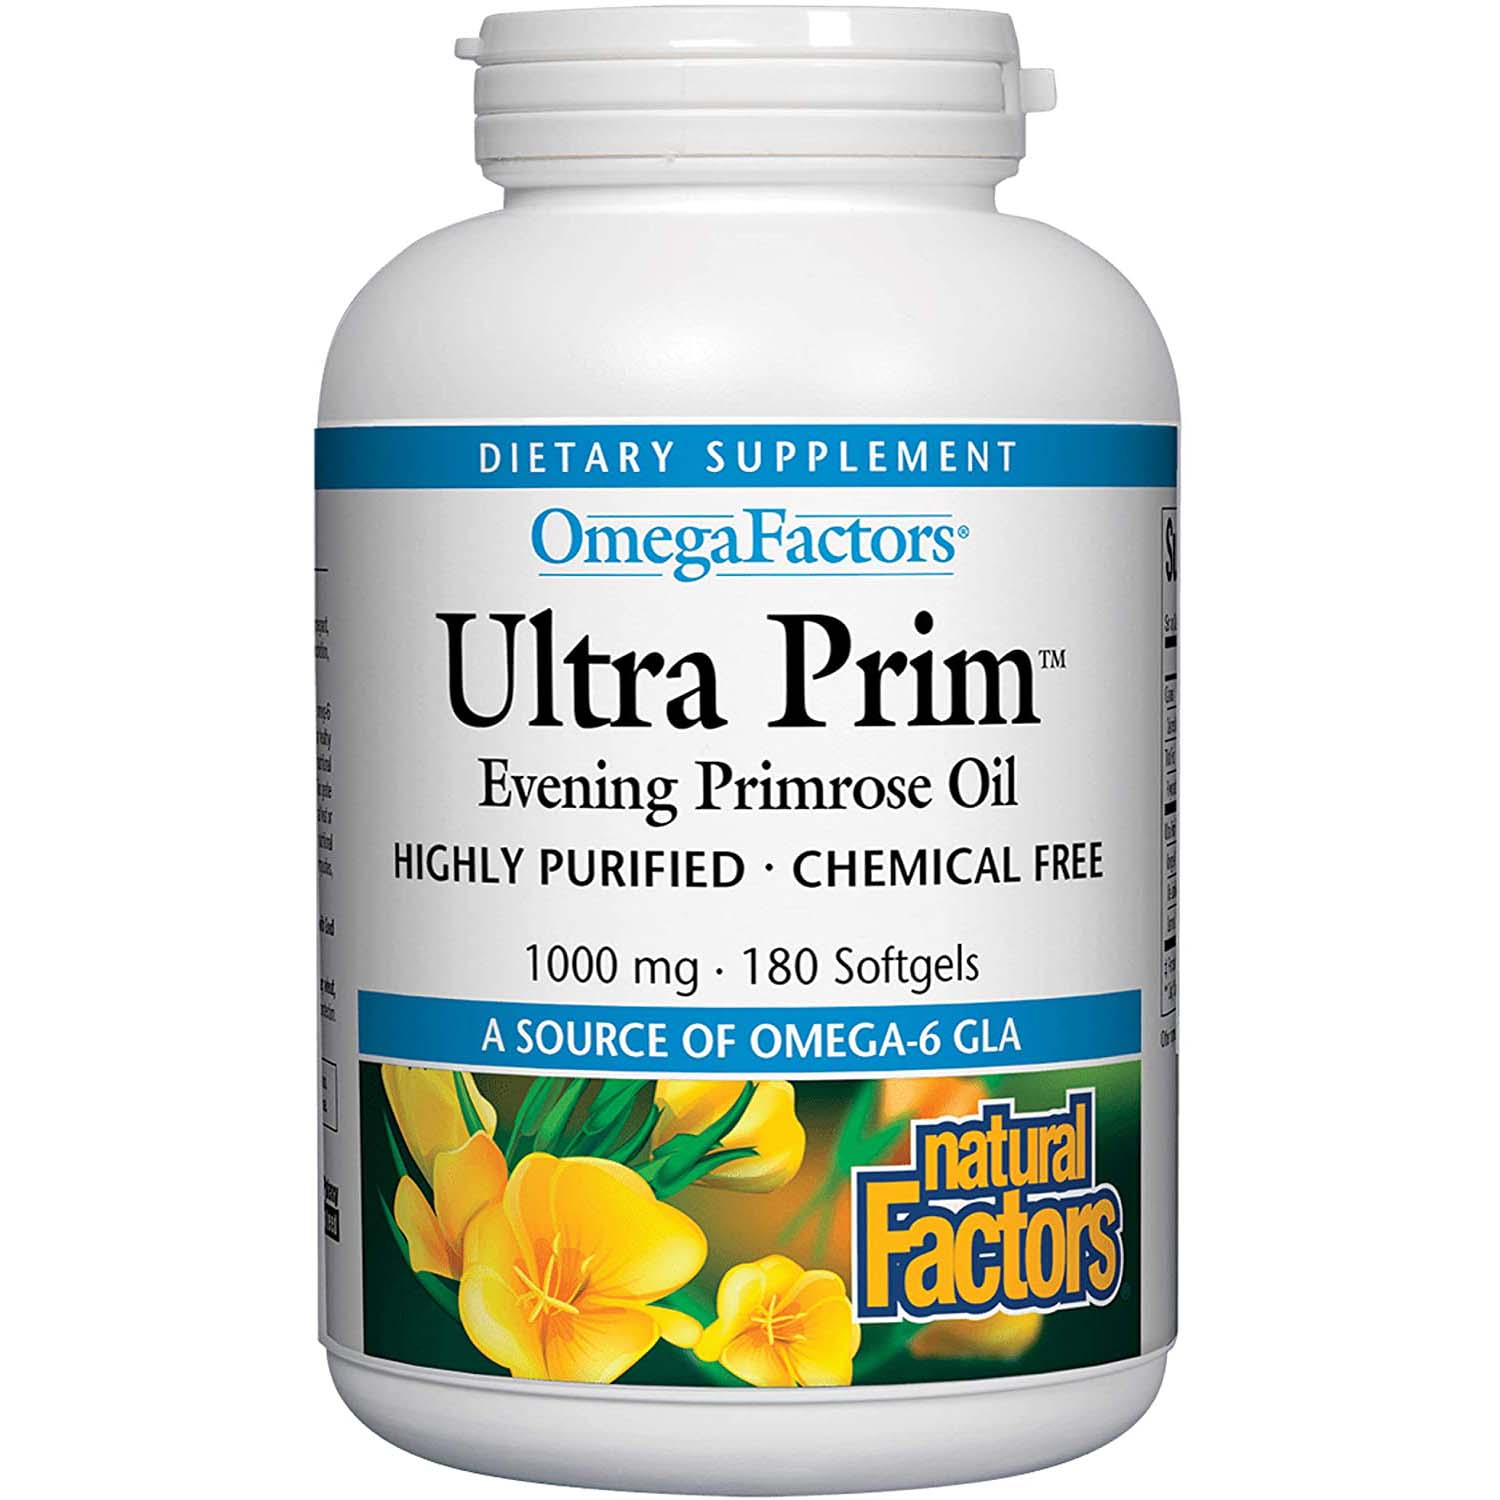 Natural Factors Ultra Prim Evening Primrose Oil, 1000 mg, 180 Softgels